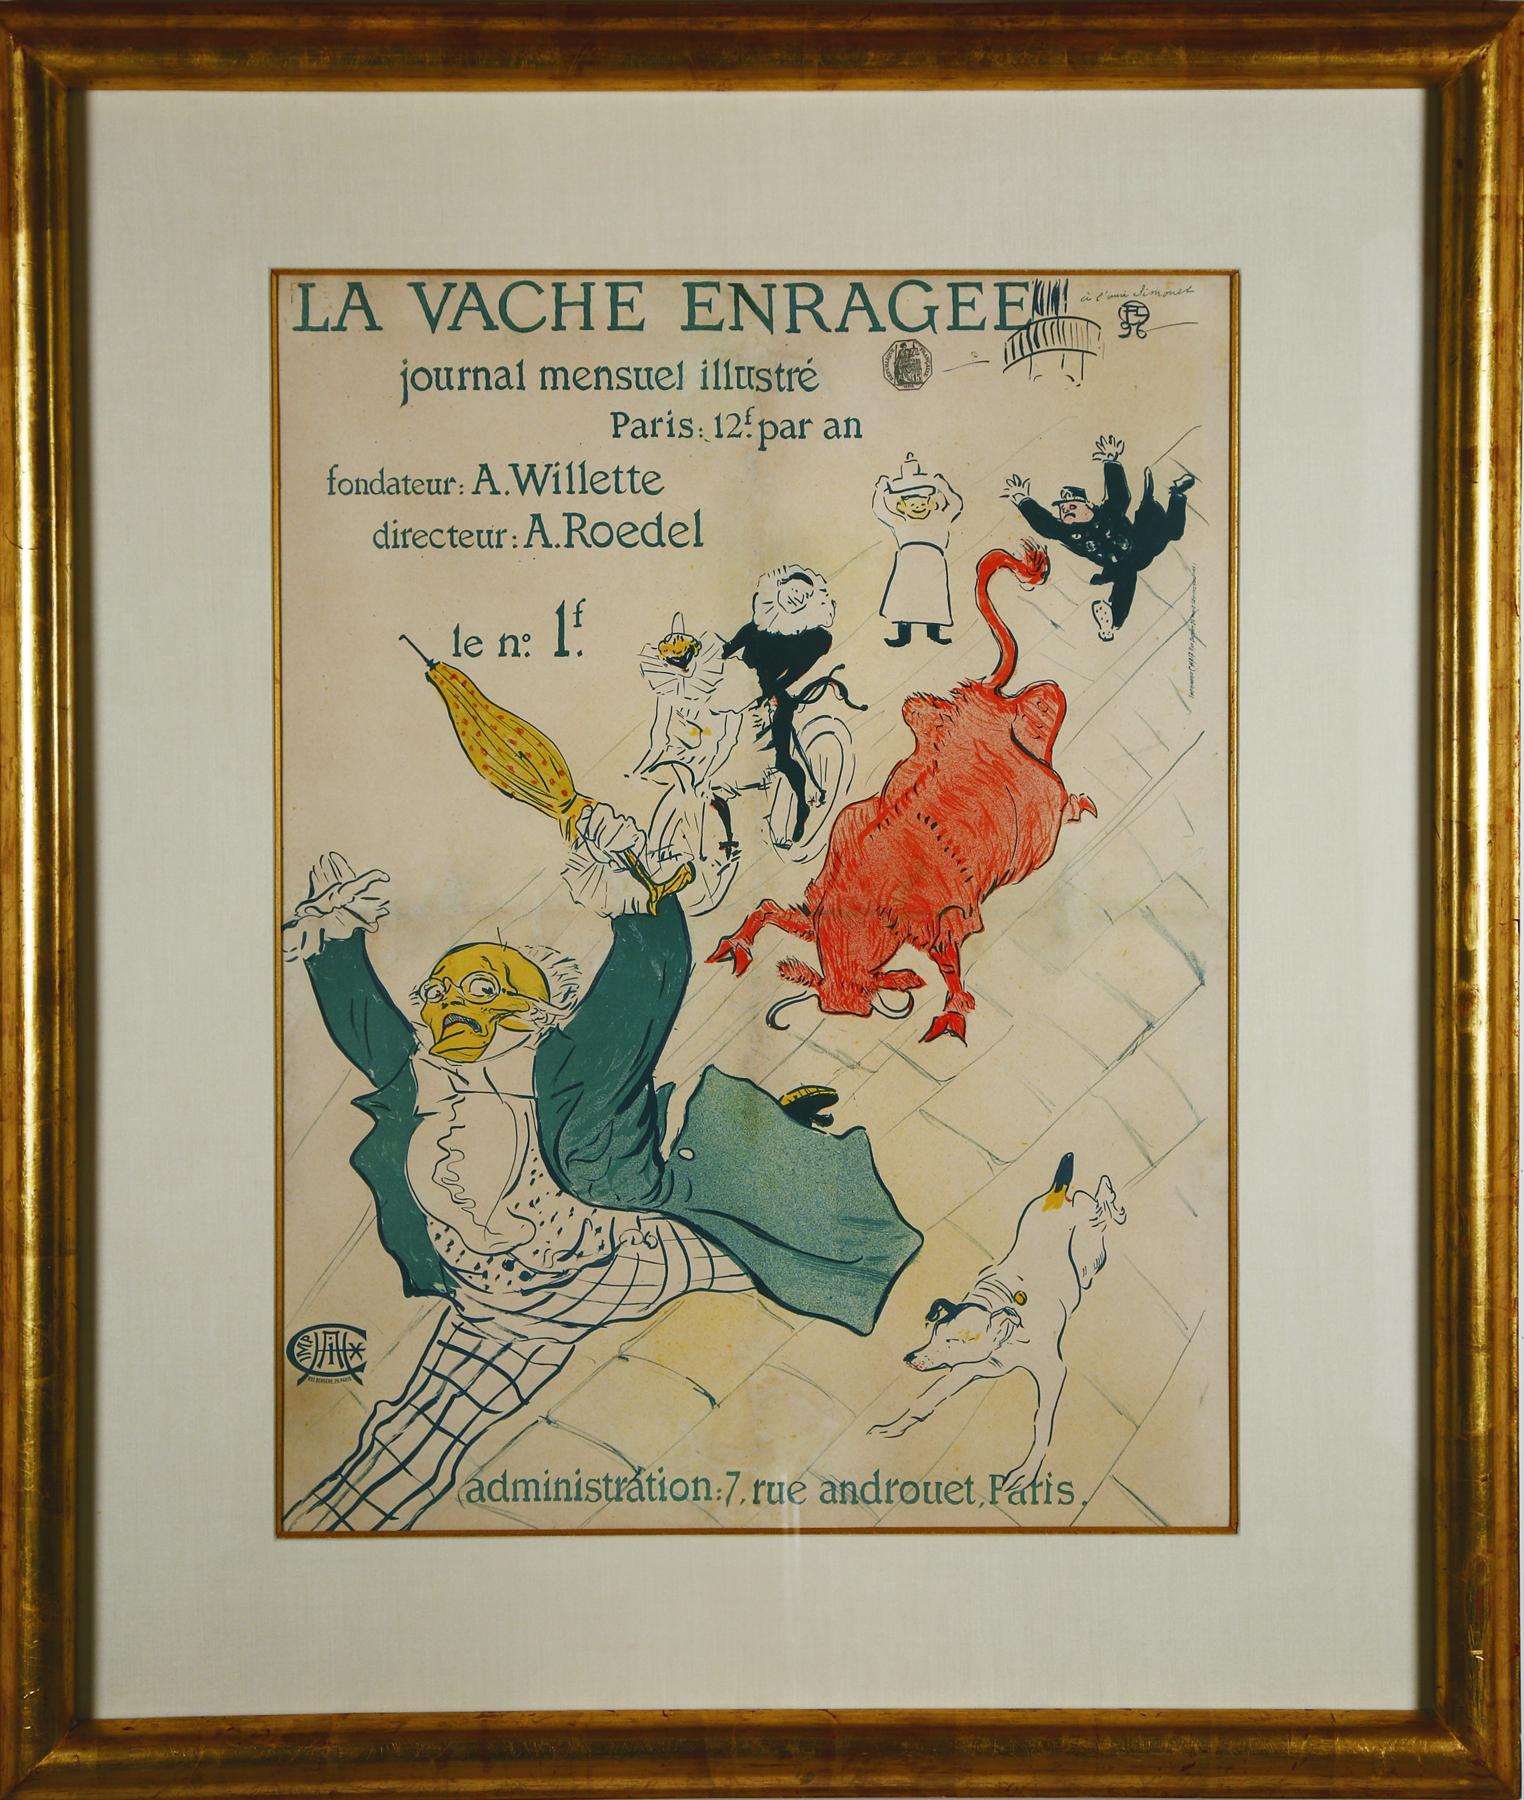 "La Vache Enragee" iconic vintage poster by Toulouse-Lautrec